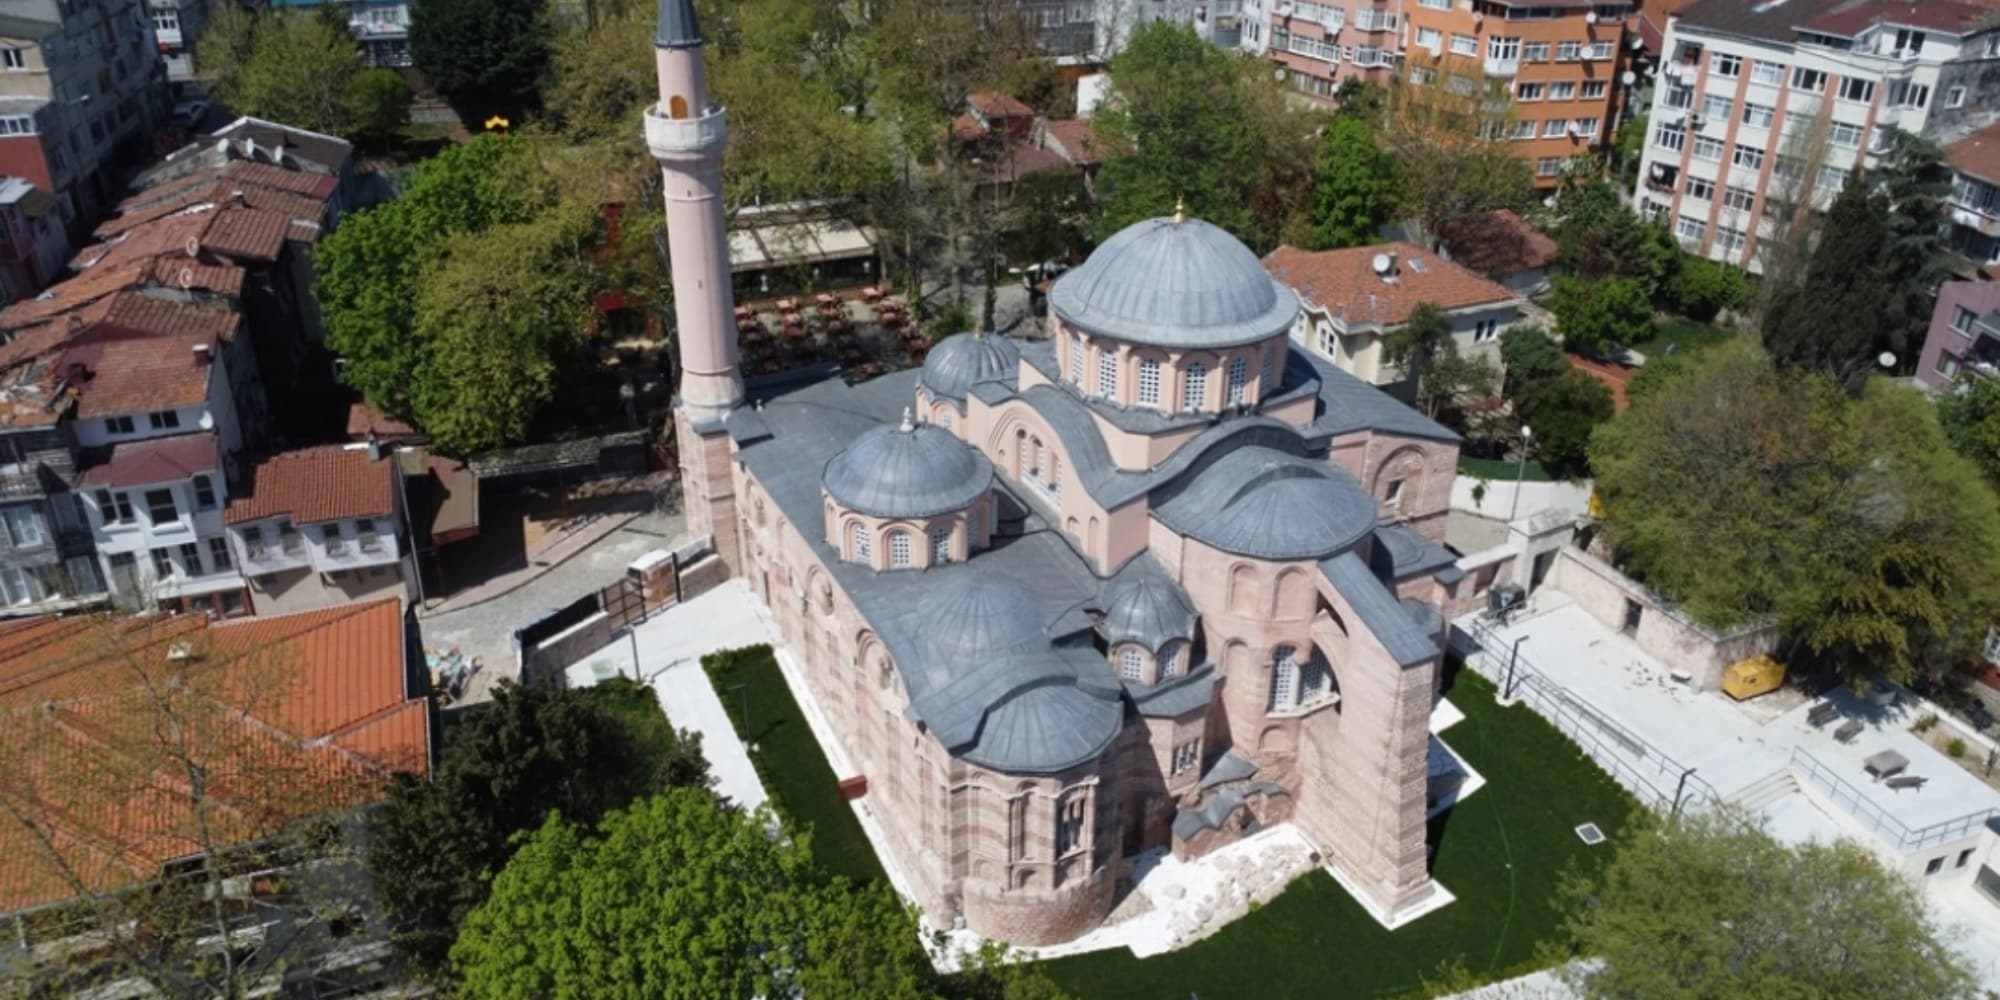 tzami konstantinoypoli - Κωνσταντινούπολη: Ως τζαμί θα λειτουργεί από σήμερα η ιστορική βυζαντινή Μονή της Χώρας